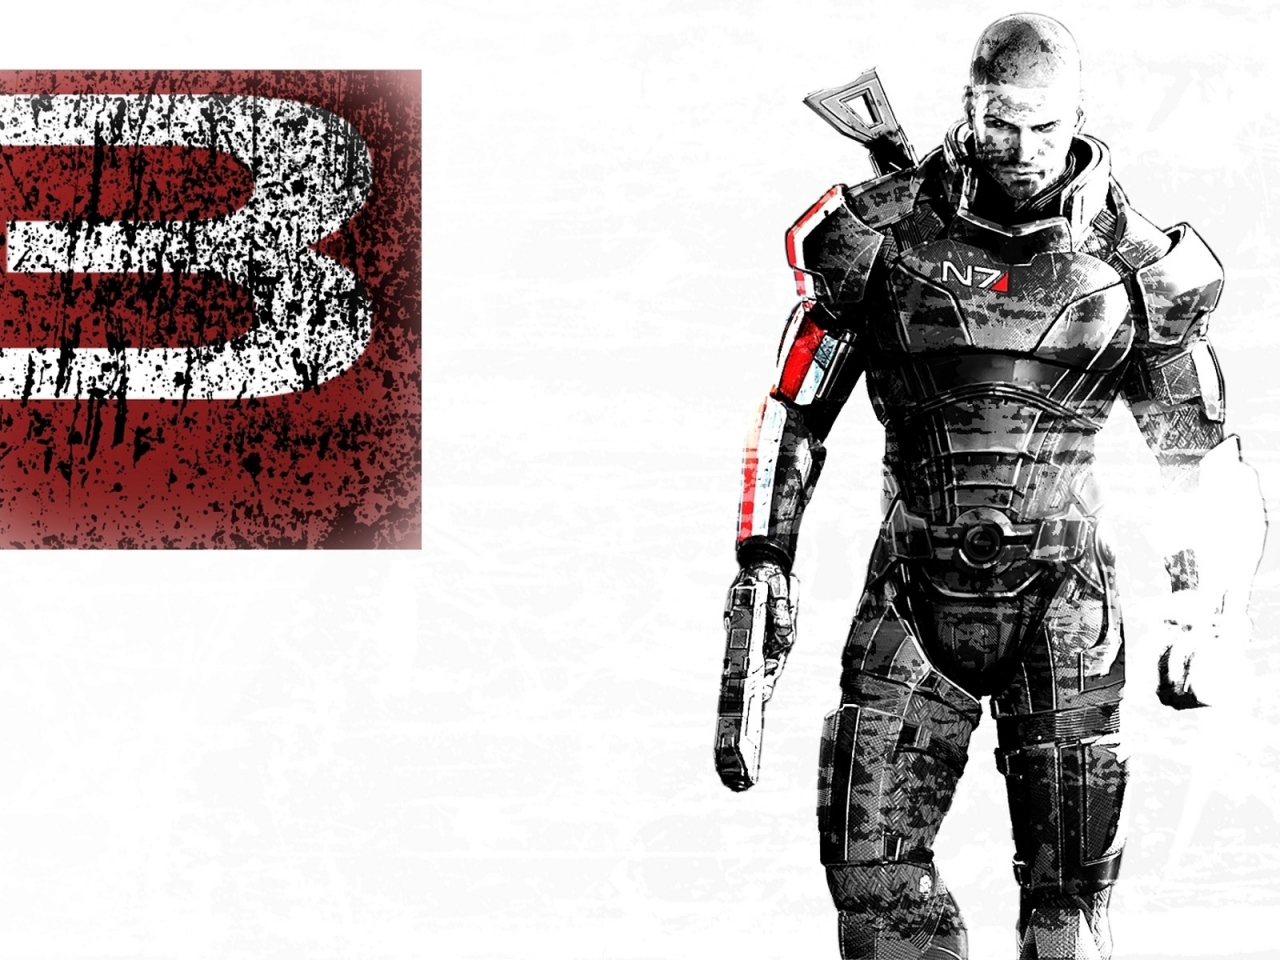 Mass Effect 3 Art for 1280 x 960 resolution